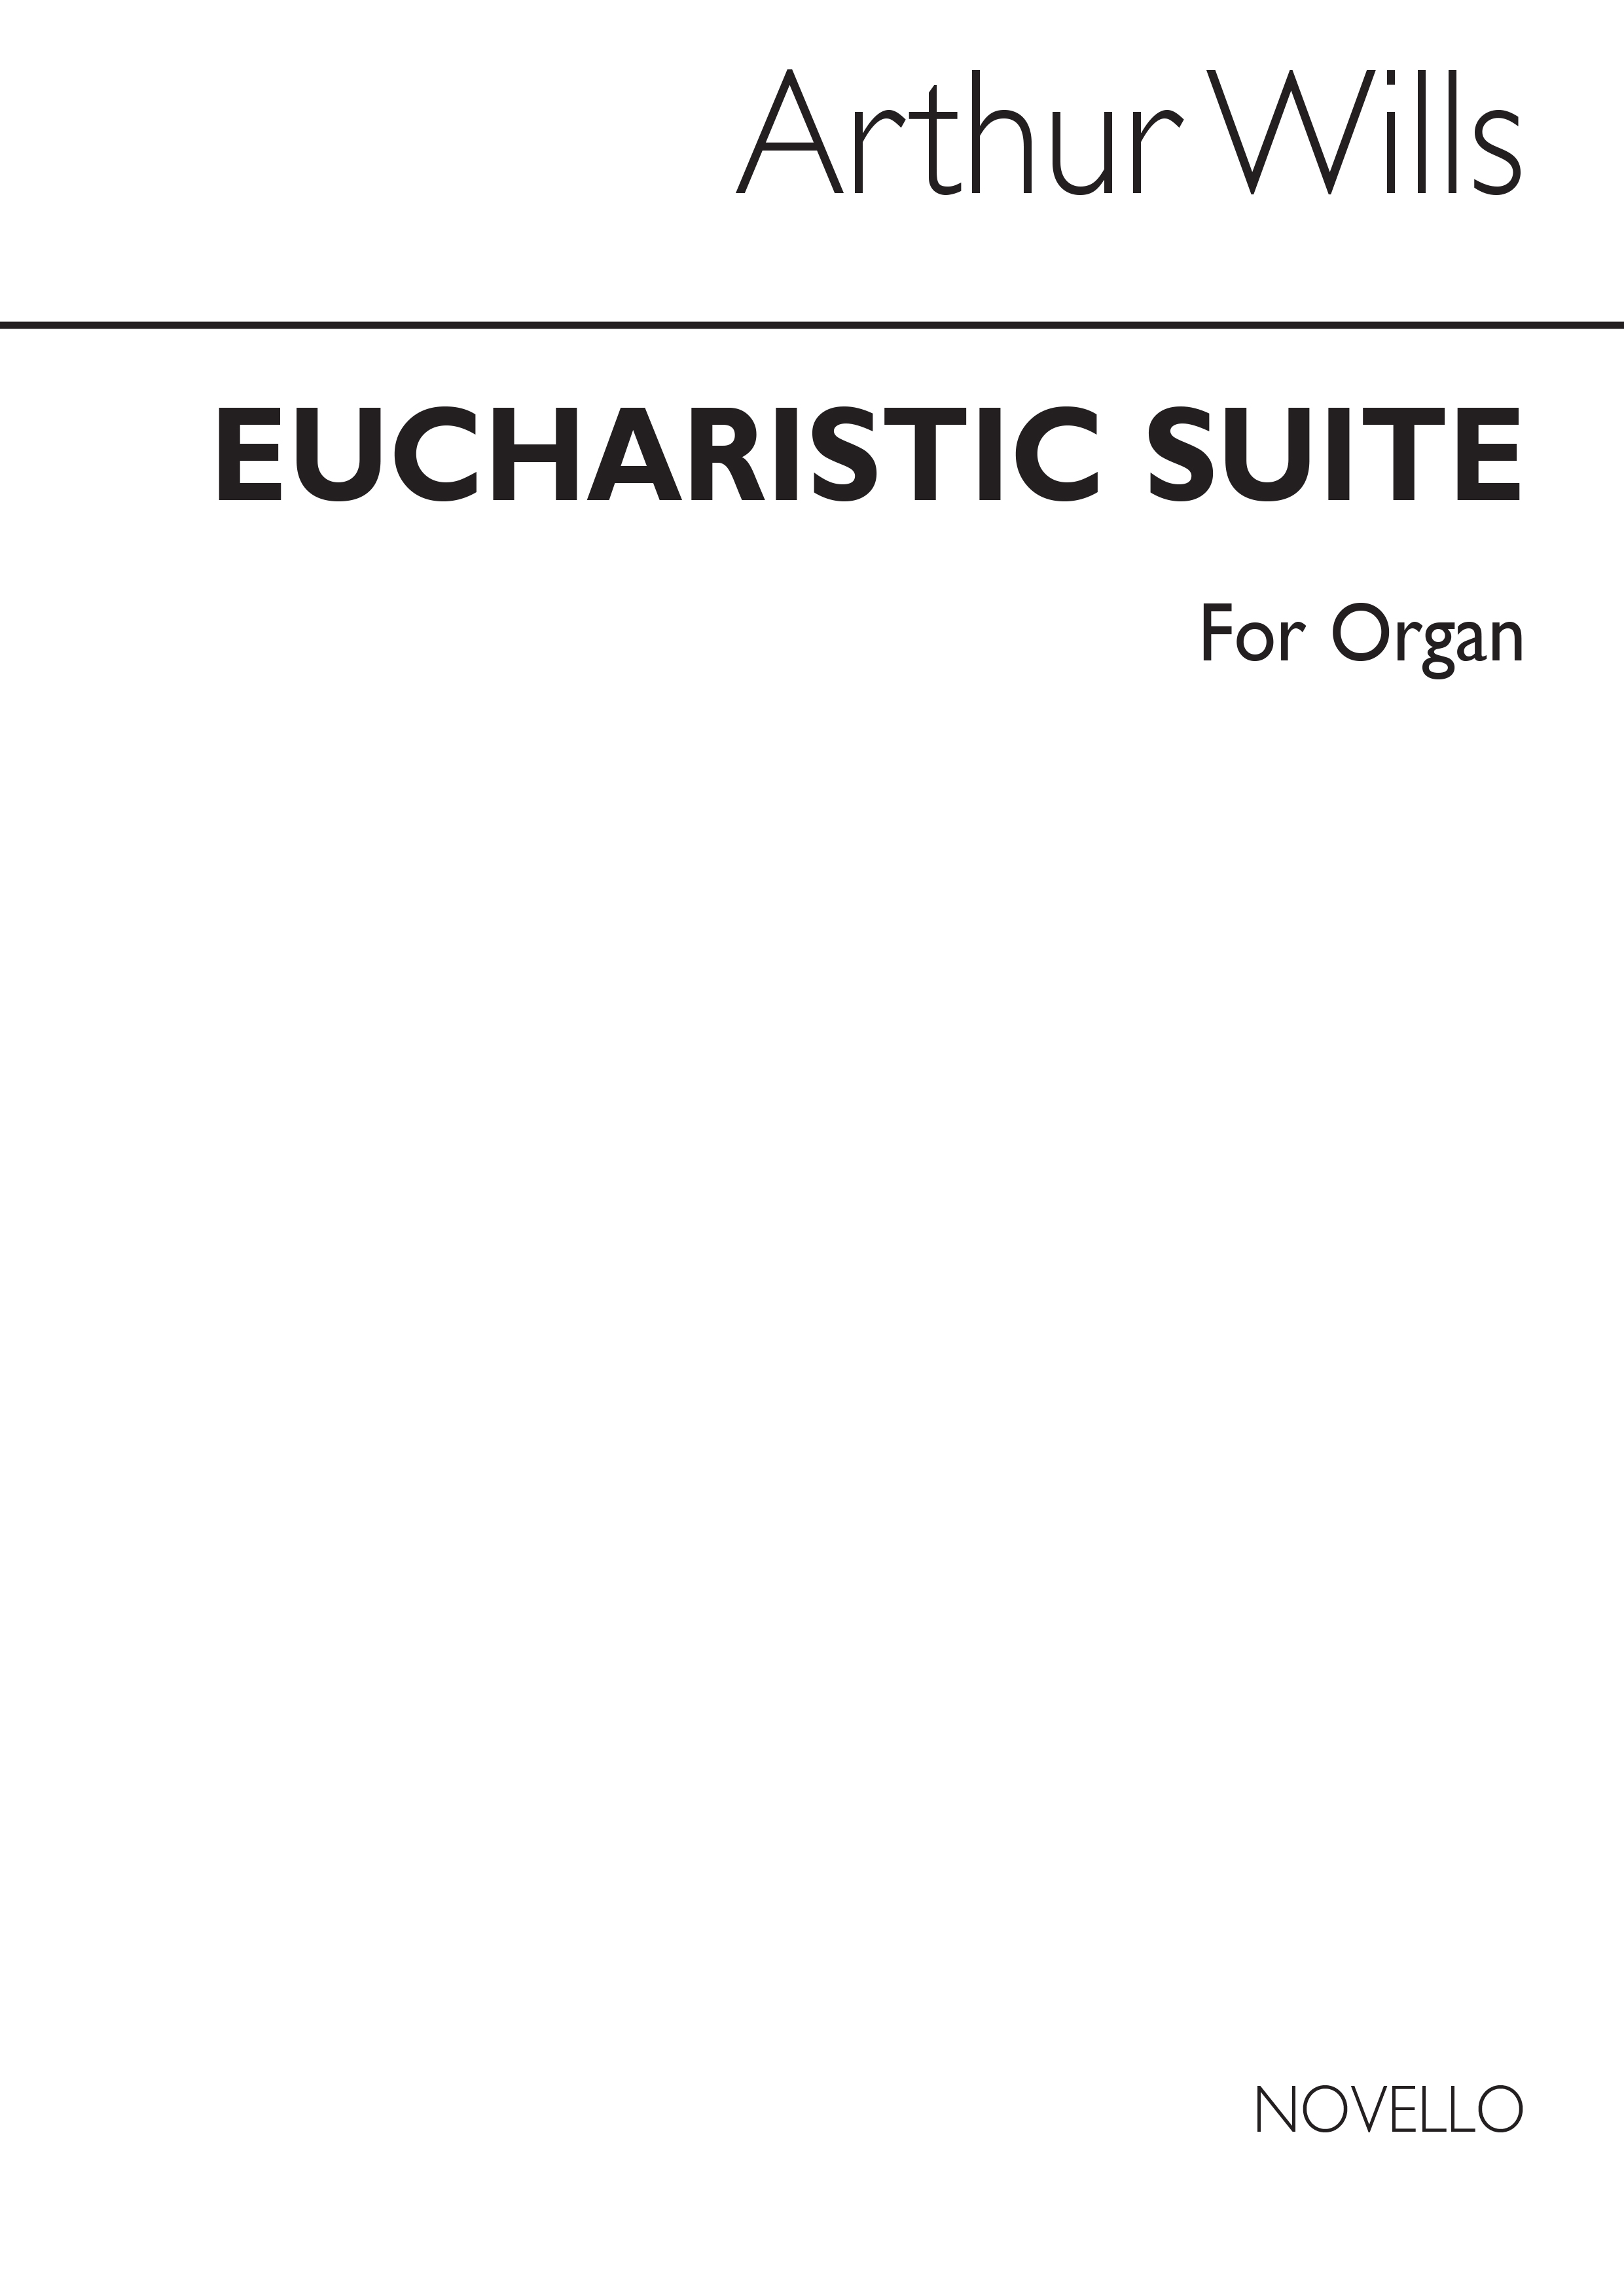 Arthur Wills: Eucharistic Suite For Organ